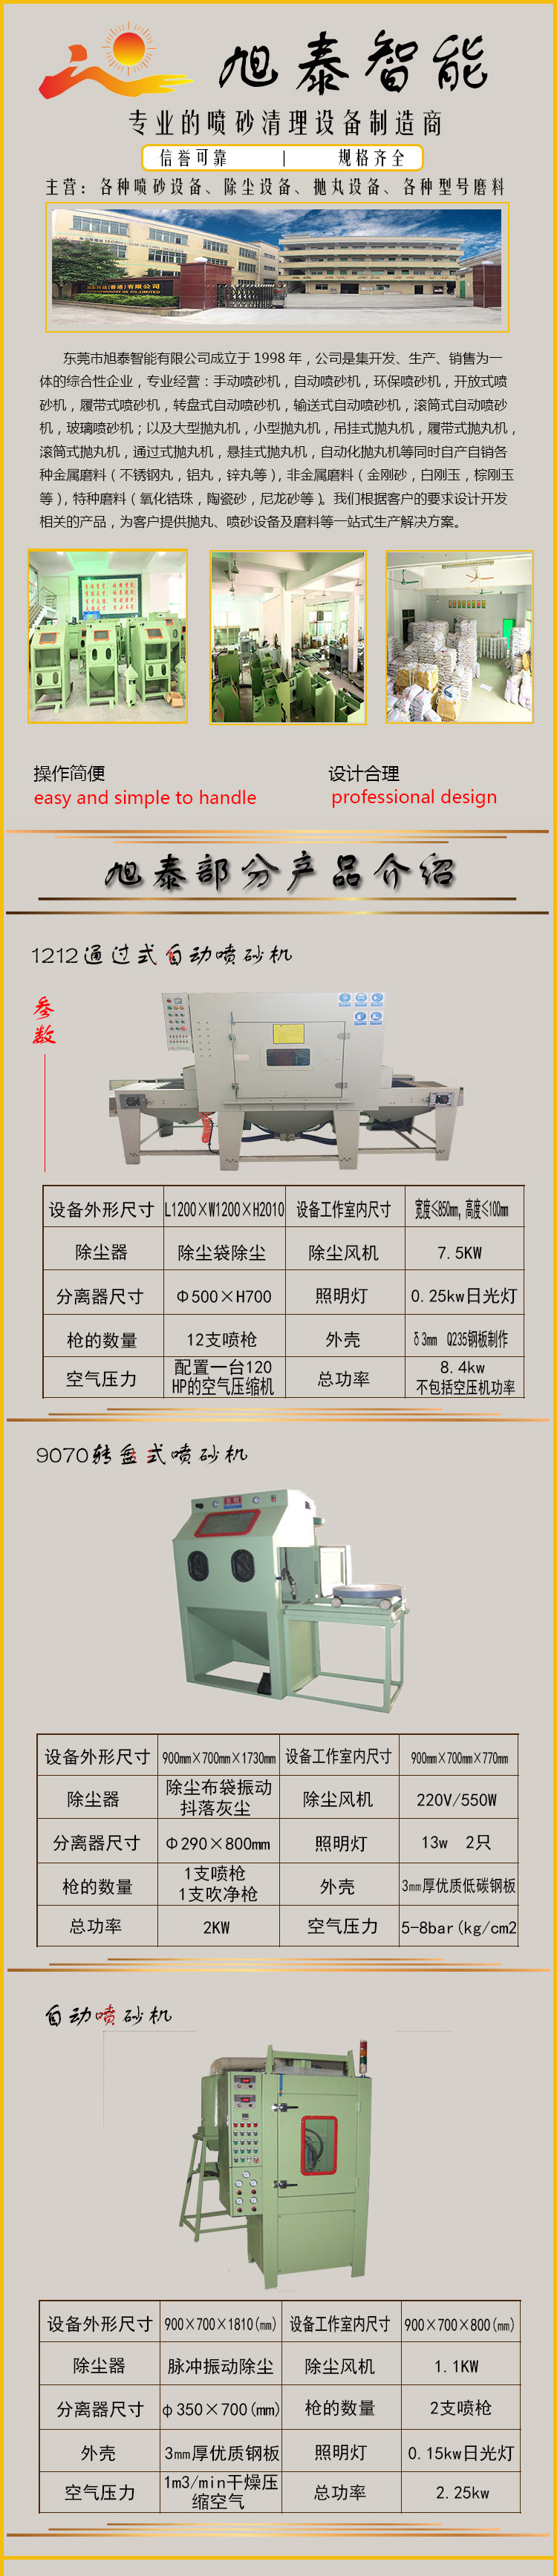 8090手动喷砂机 深圳亚克力板喷砂专用手动喷砂机 东莞打砂机厂家示例图1